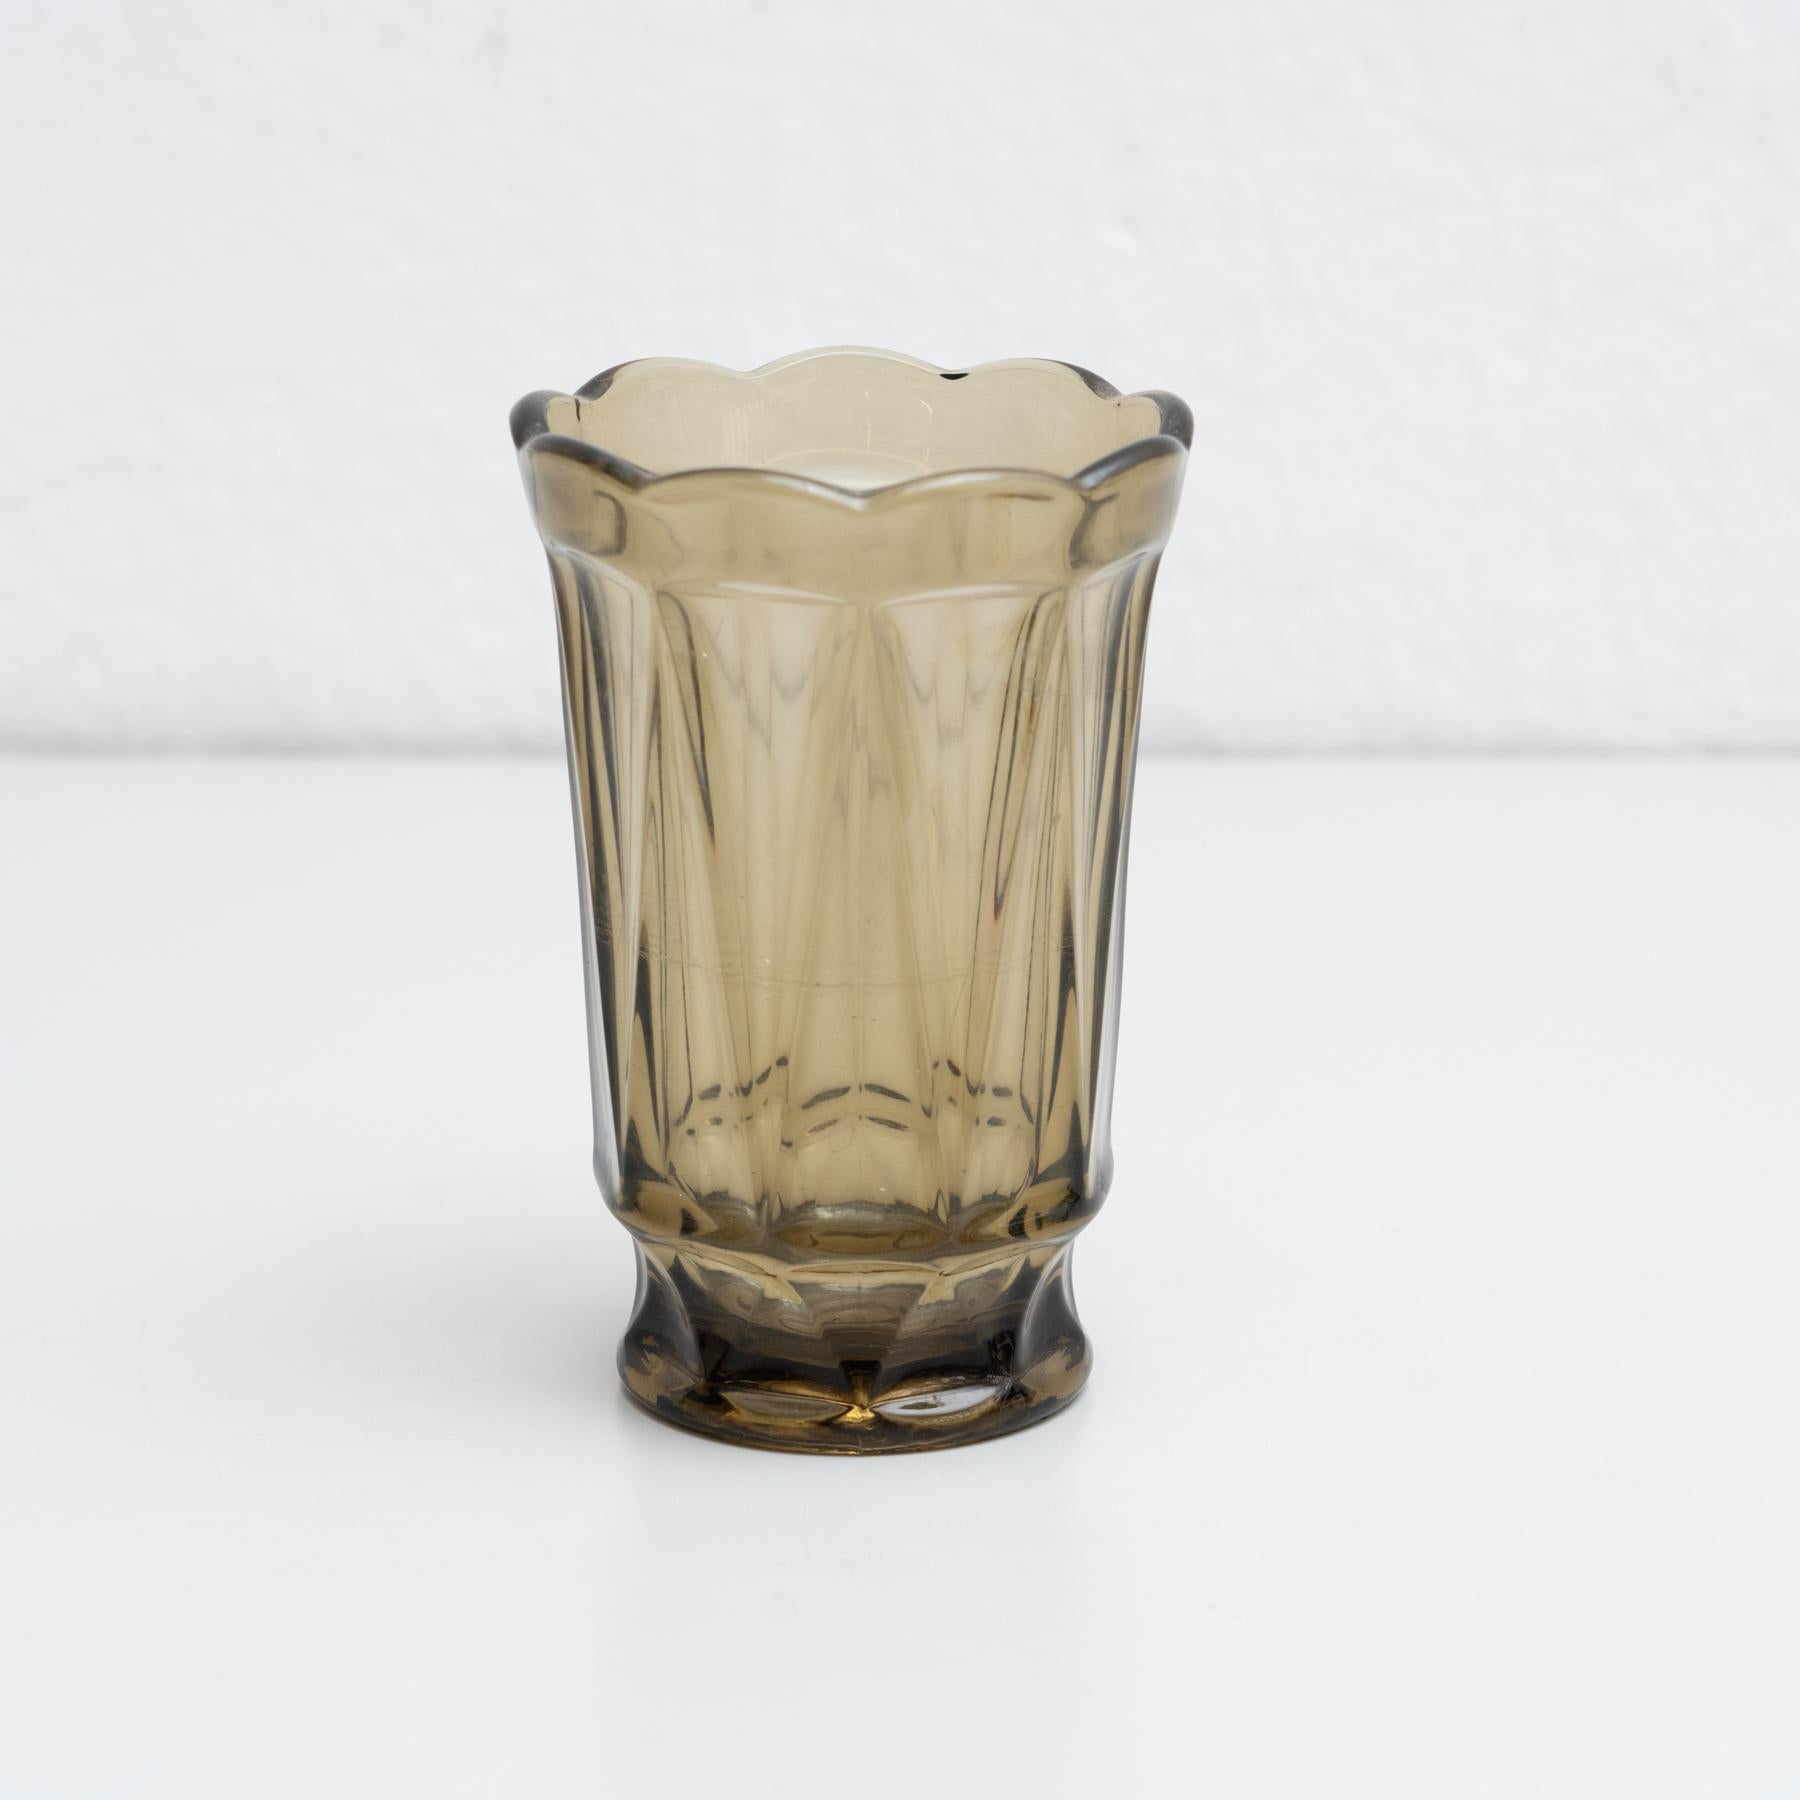 Vase à fleurs ancien en verre de Murano.

Fabriqué en Italie, vers 1970.

En état d'origine, avec de légères usures dues à l'âge et à l'utilisation, préservant une belle patine.

Matériaux :
verre Murano